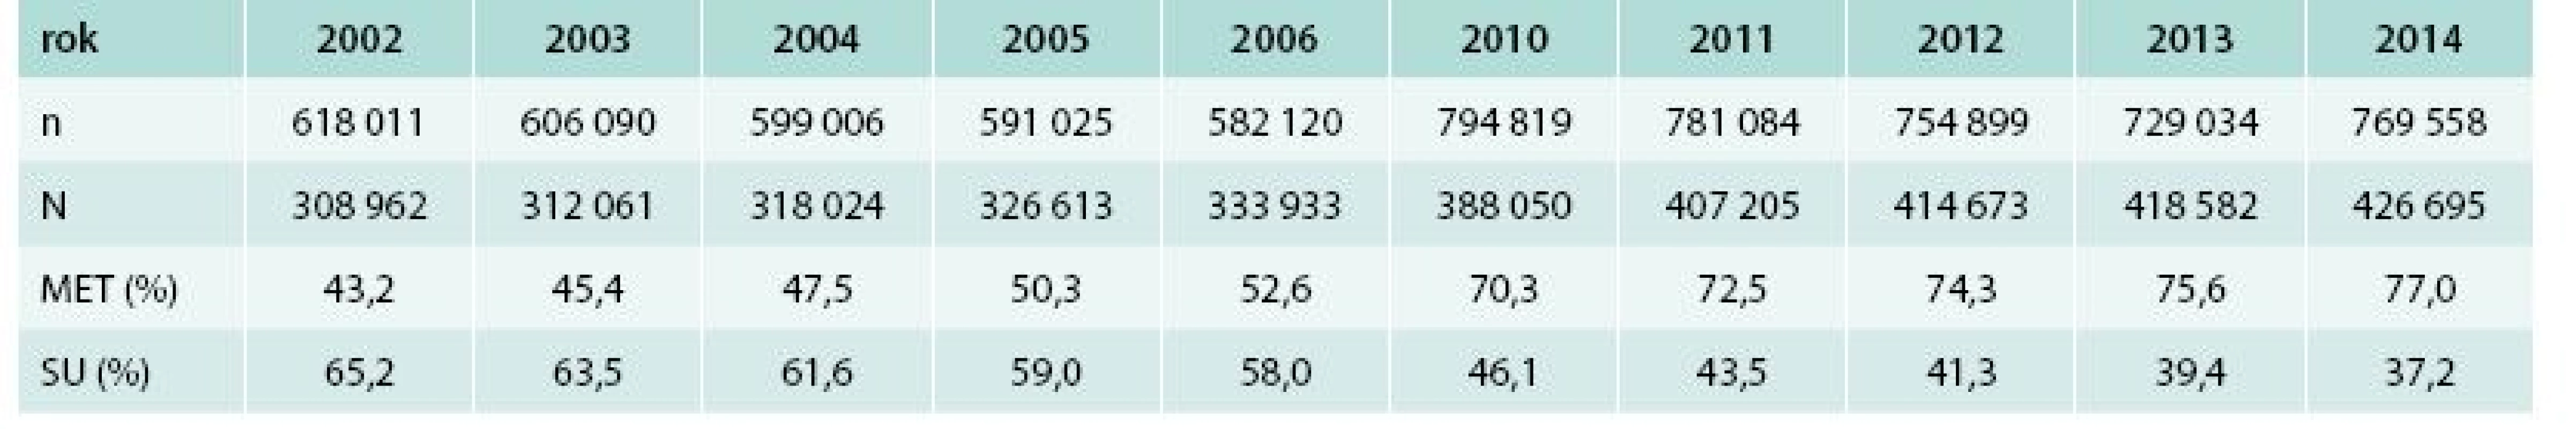 Počet osob s DM identifikovaných v databázi VZP v jednotlivých letech podle přítomné diagnózy diabetes mellitus (n) a počet osob, u nichž byla v daném roce nejméně jednou předepsána jakákoliv terapie ze skupiny A10 (N)